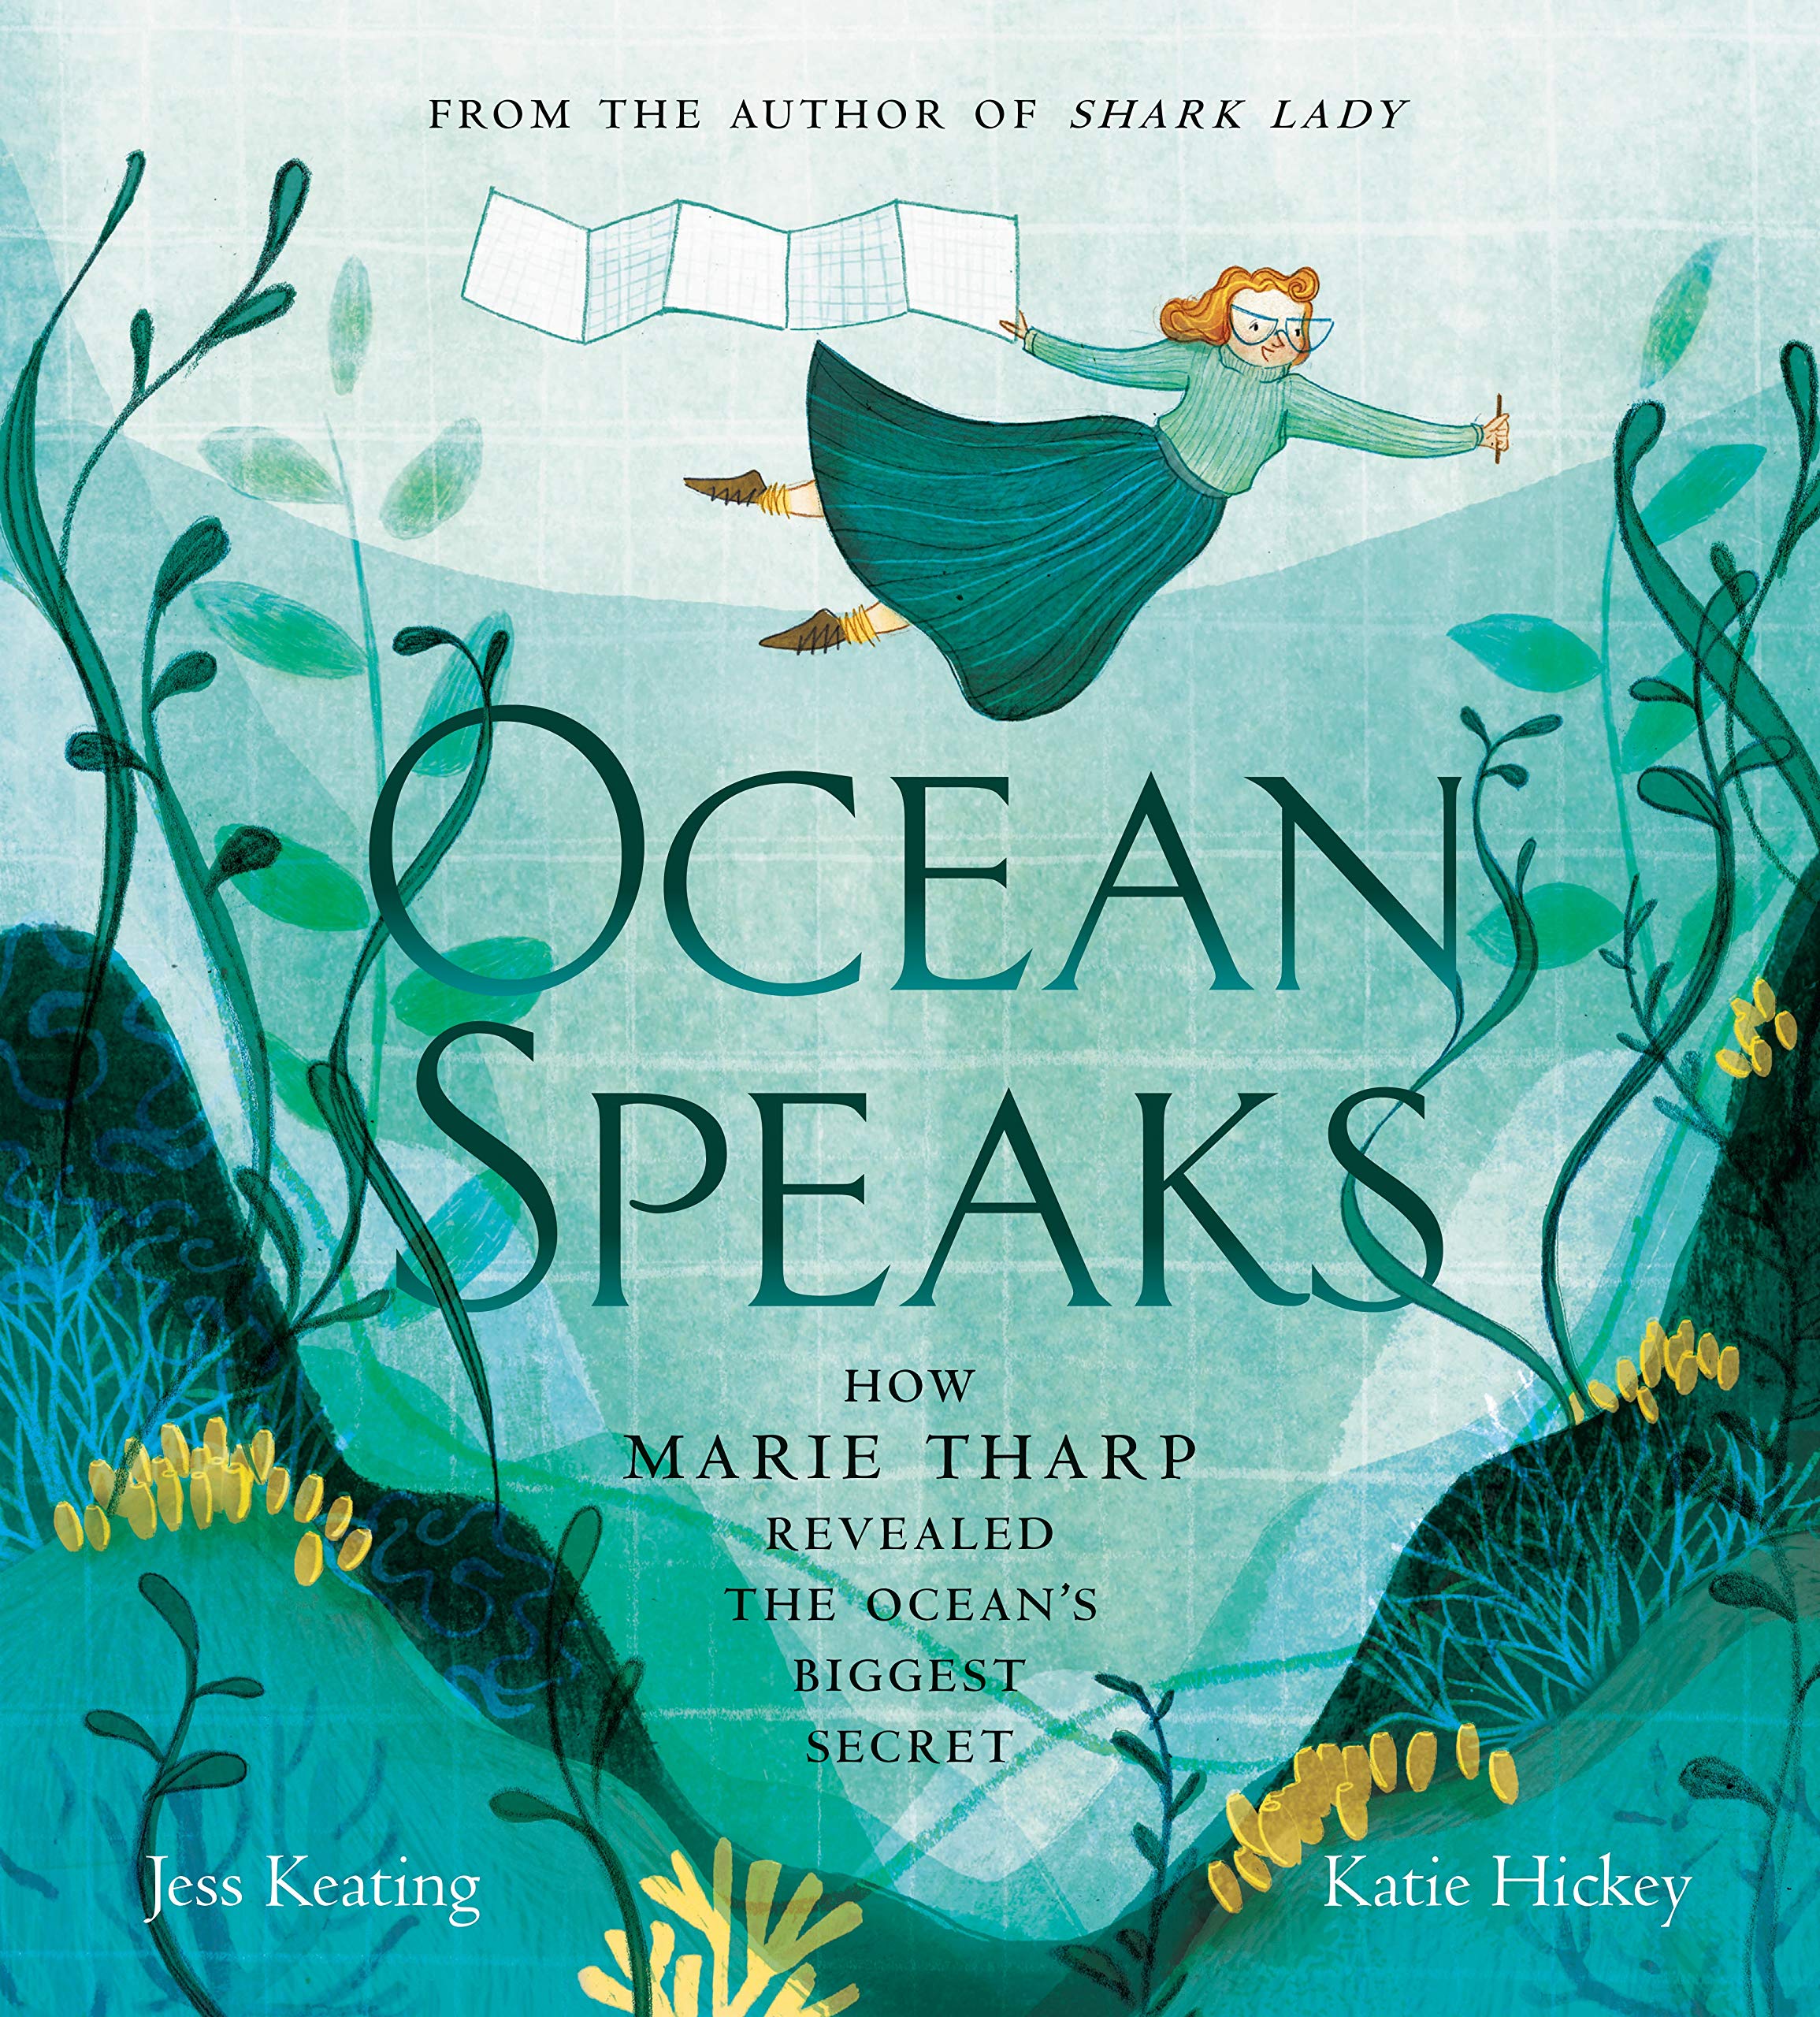 Ocean Speaks: How Marie Tharp Revealed the Ocean's Biggest Secret